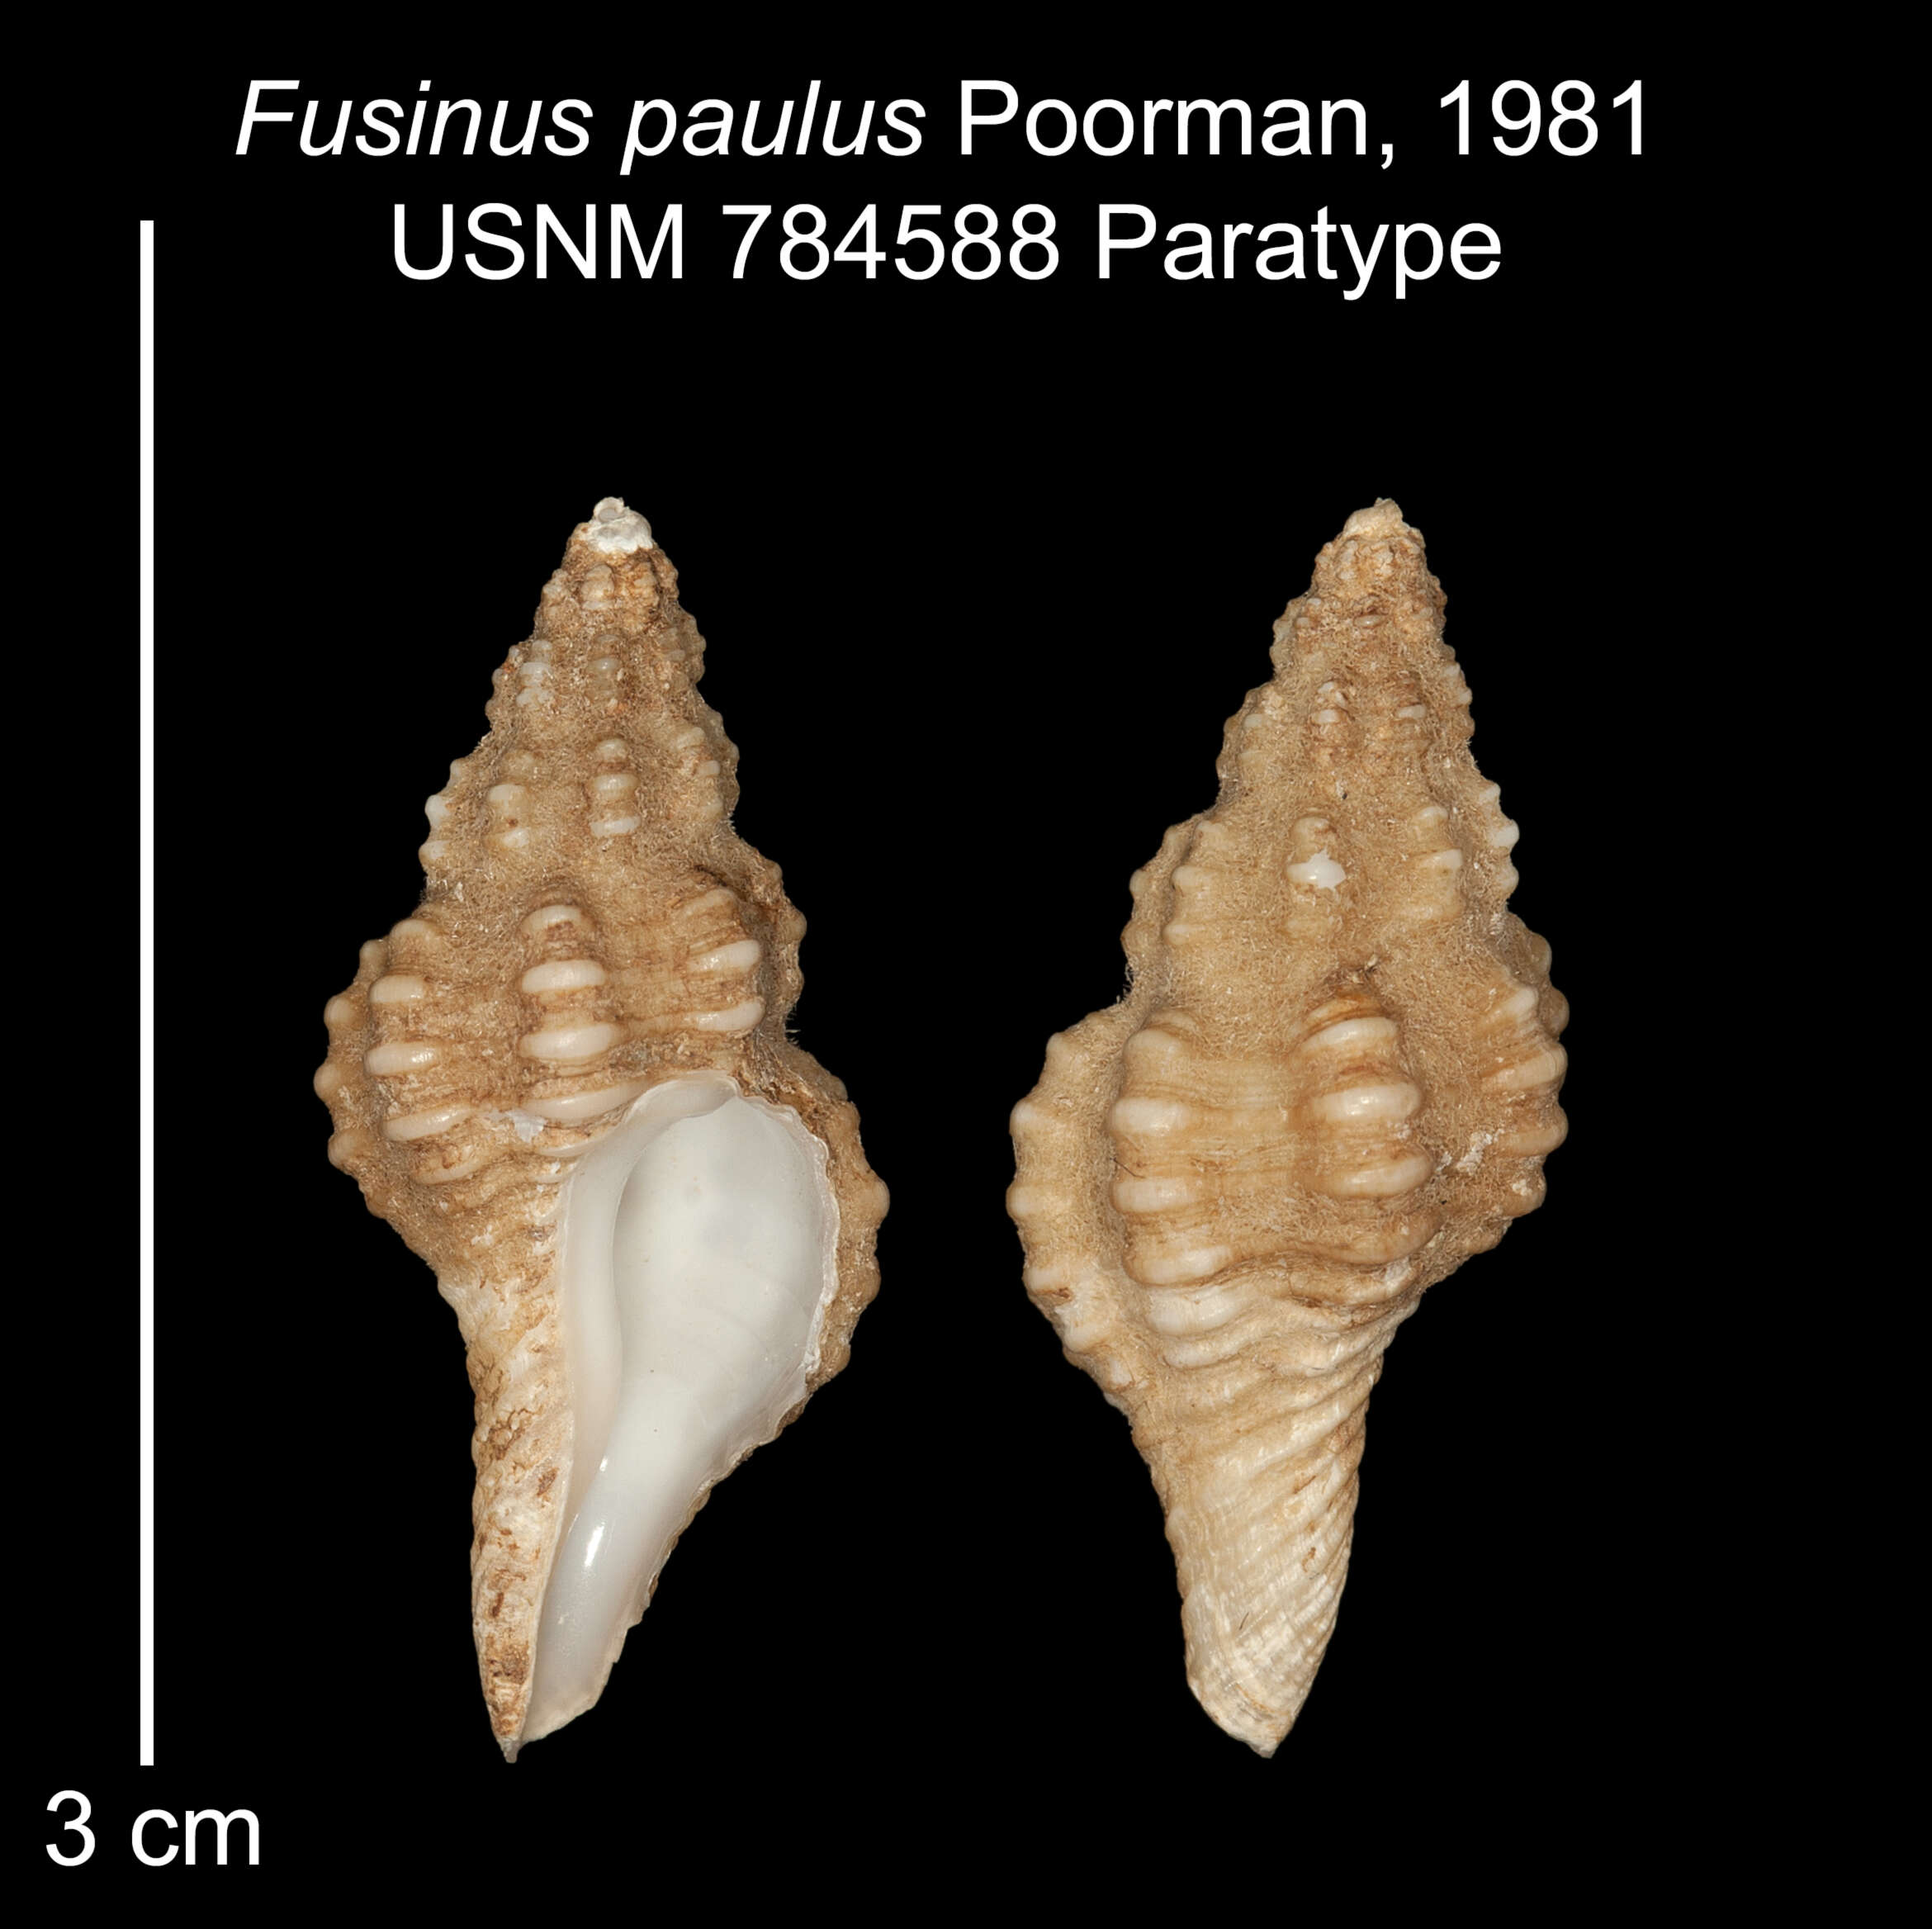 Image of Fusinus paulus Poorman 1981